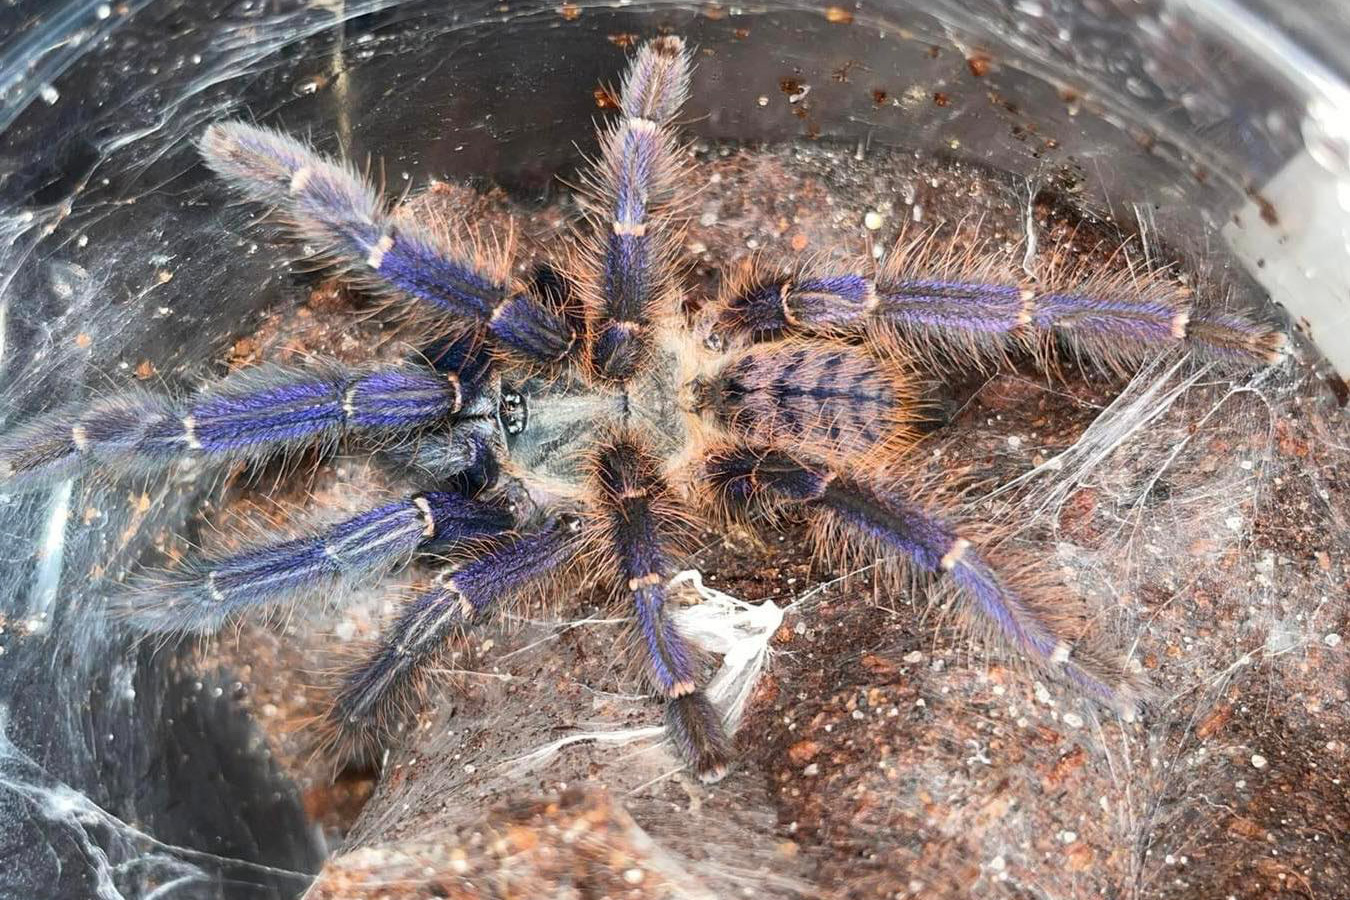 Phormingochilus sp. “Sabah blue” 3-4cm